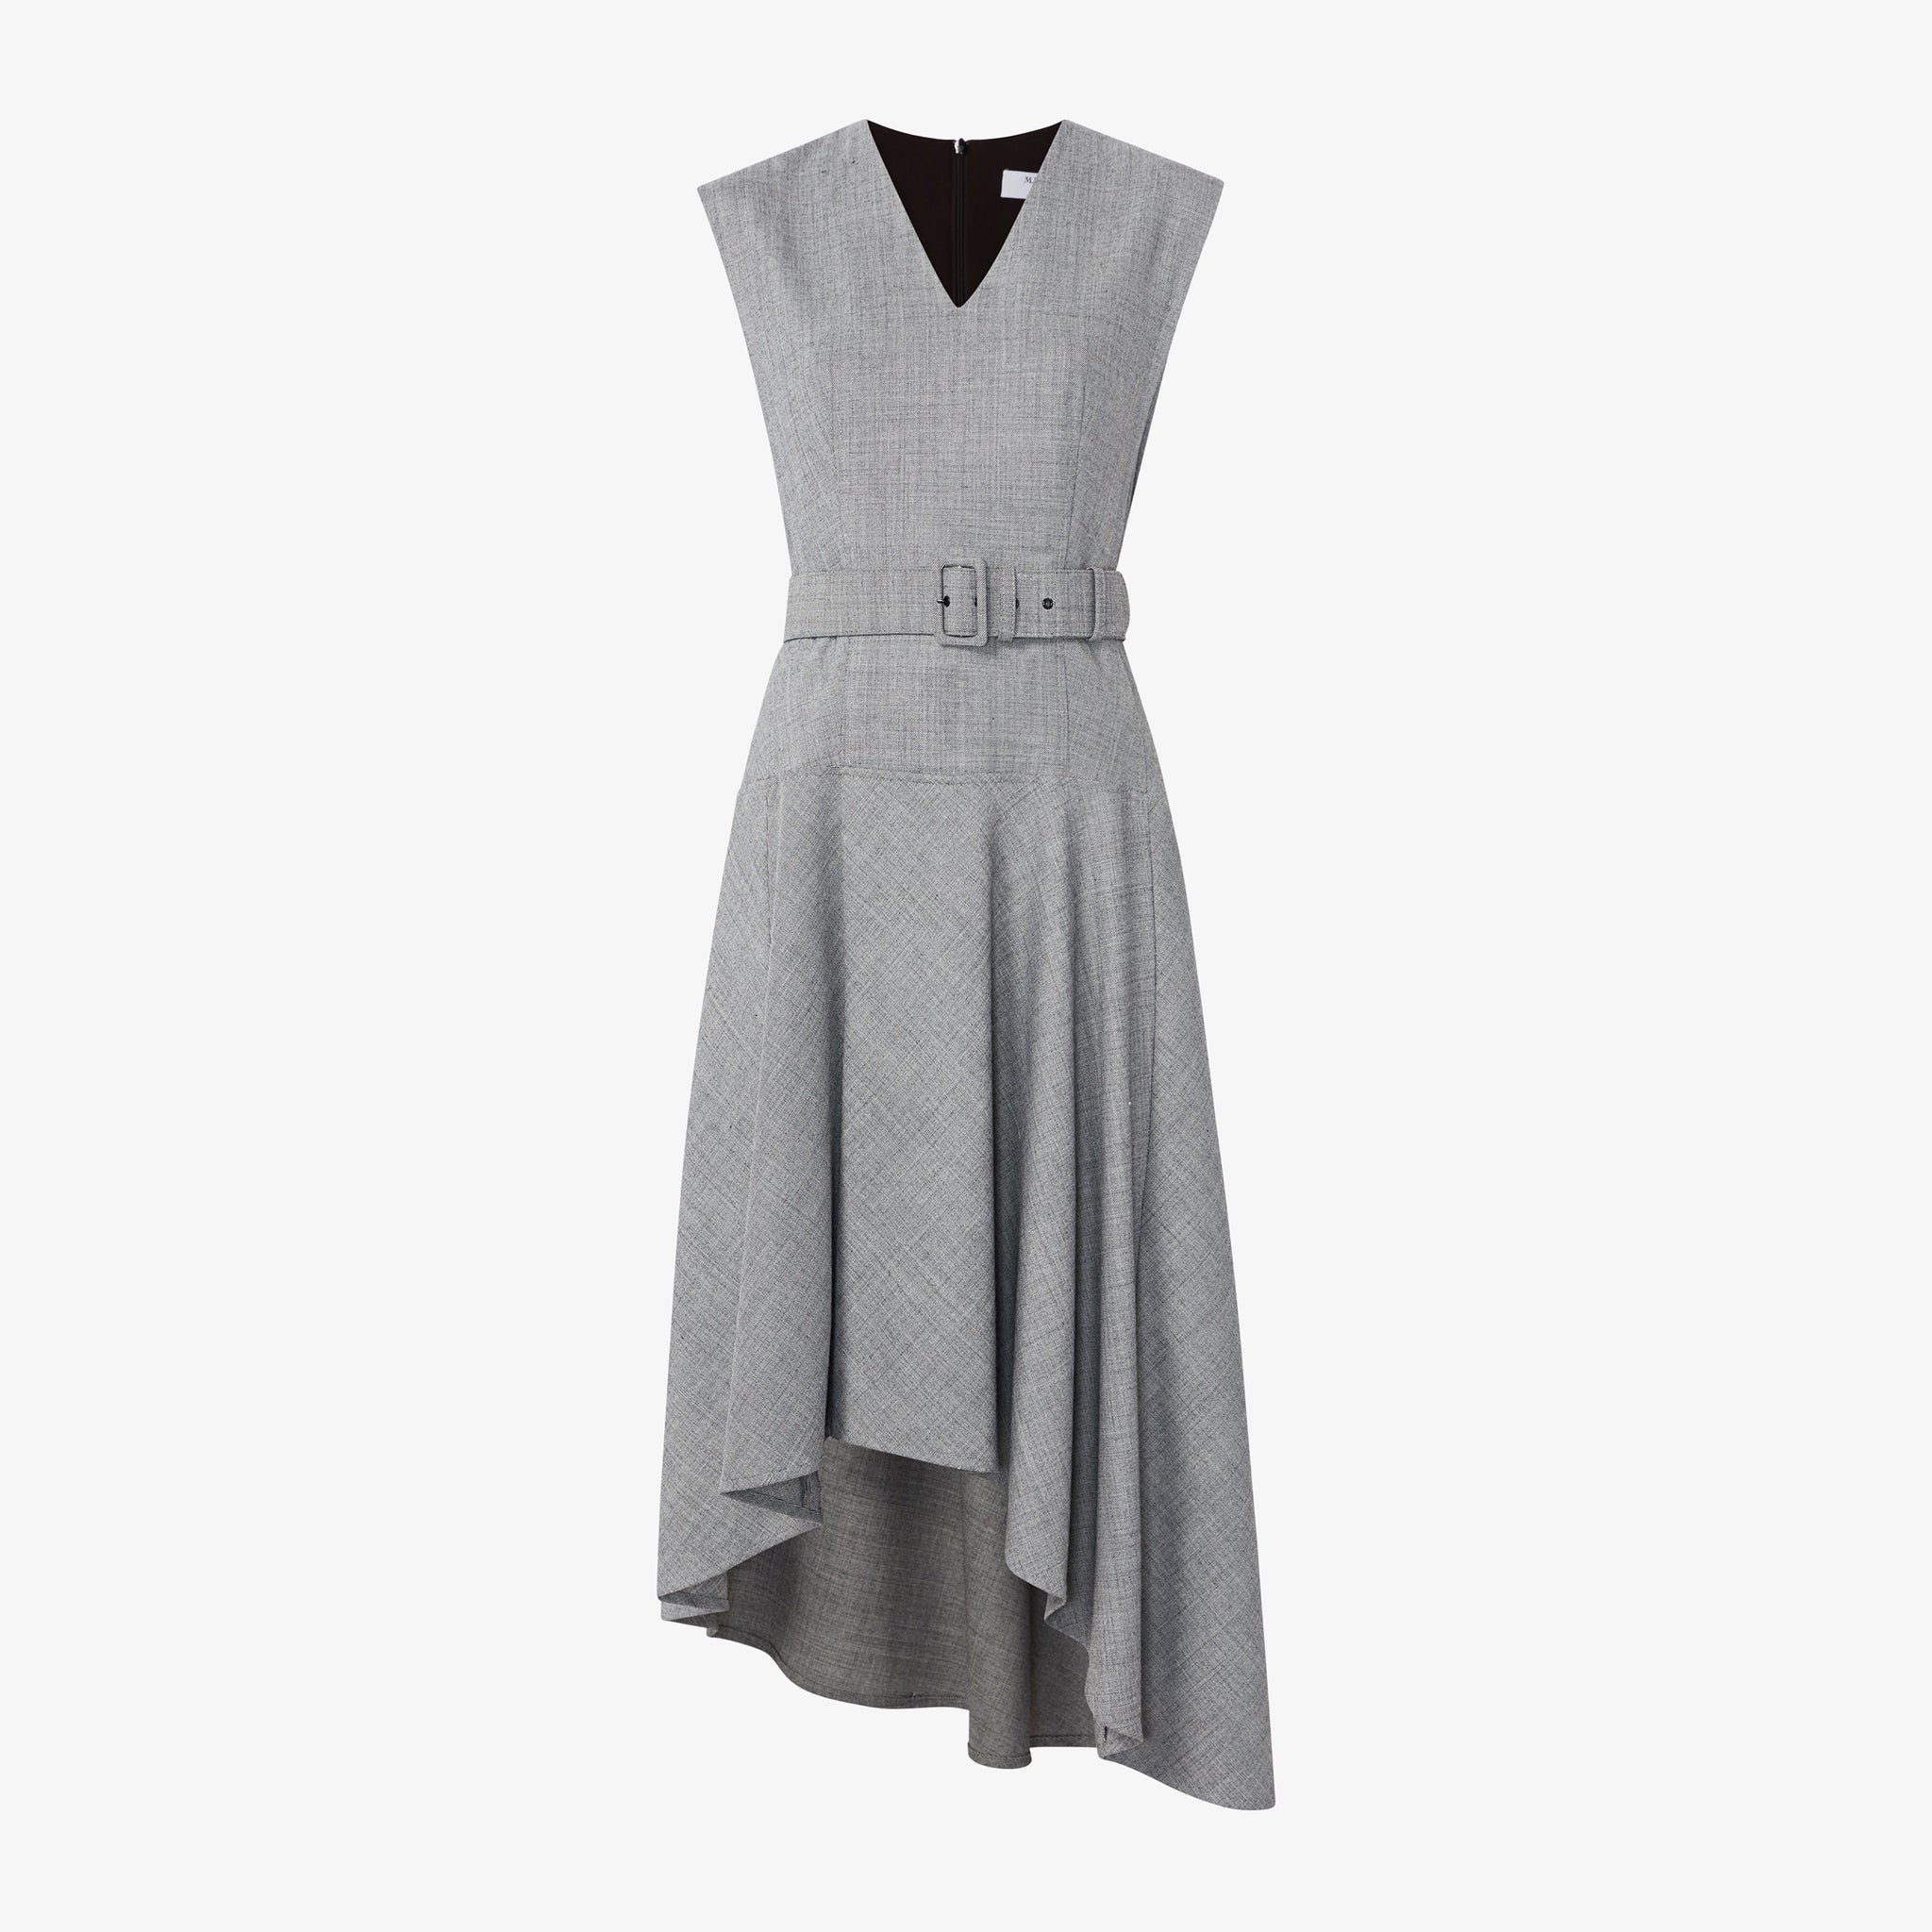 Packshot image of the Kelsey Dress - Sharkskin in Black / White